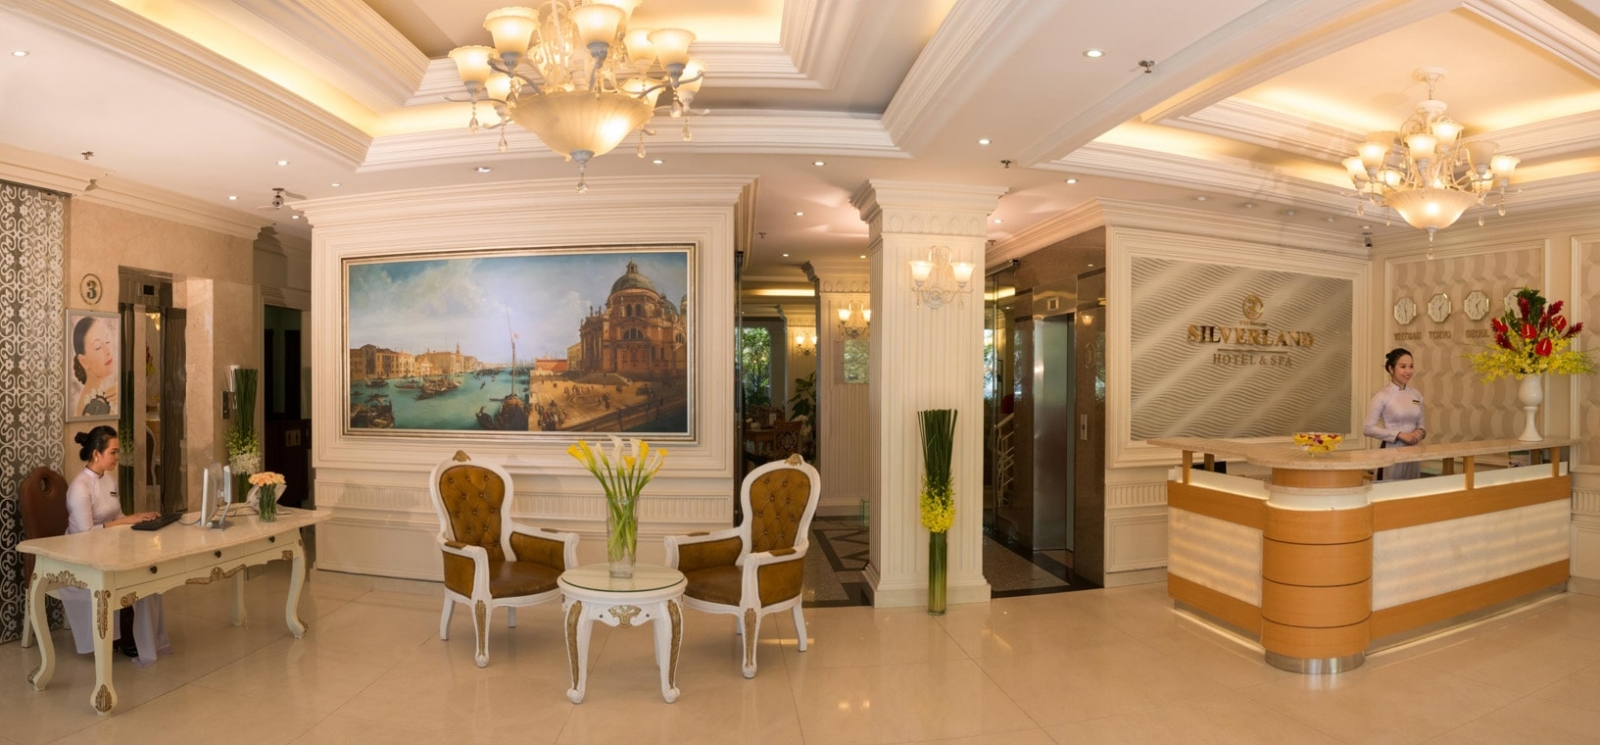 Silverland Sil Hotel & Spa -  khách sạn 3 sao ở tp. Hồ chí Minh